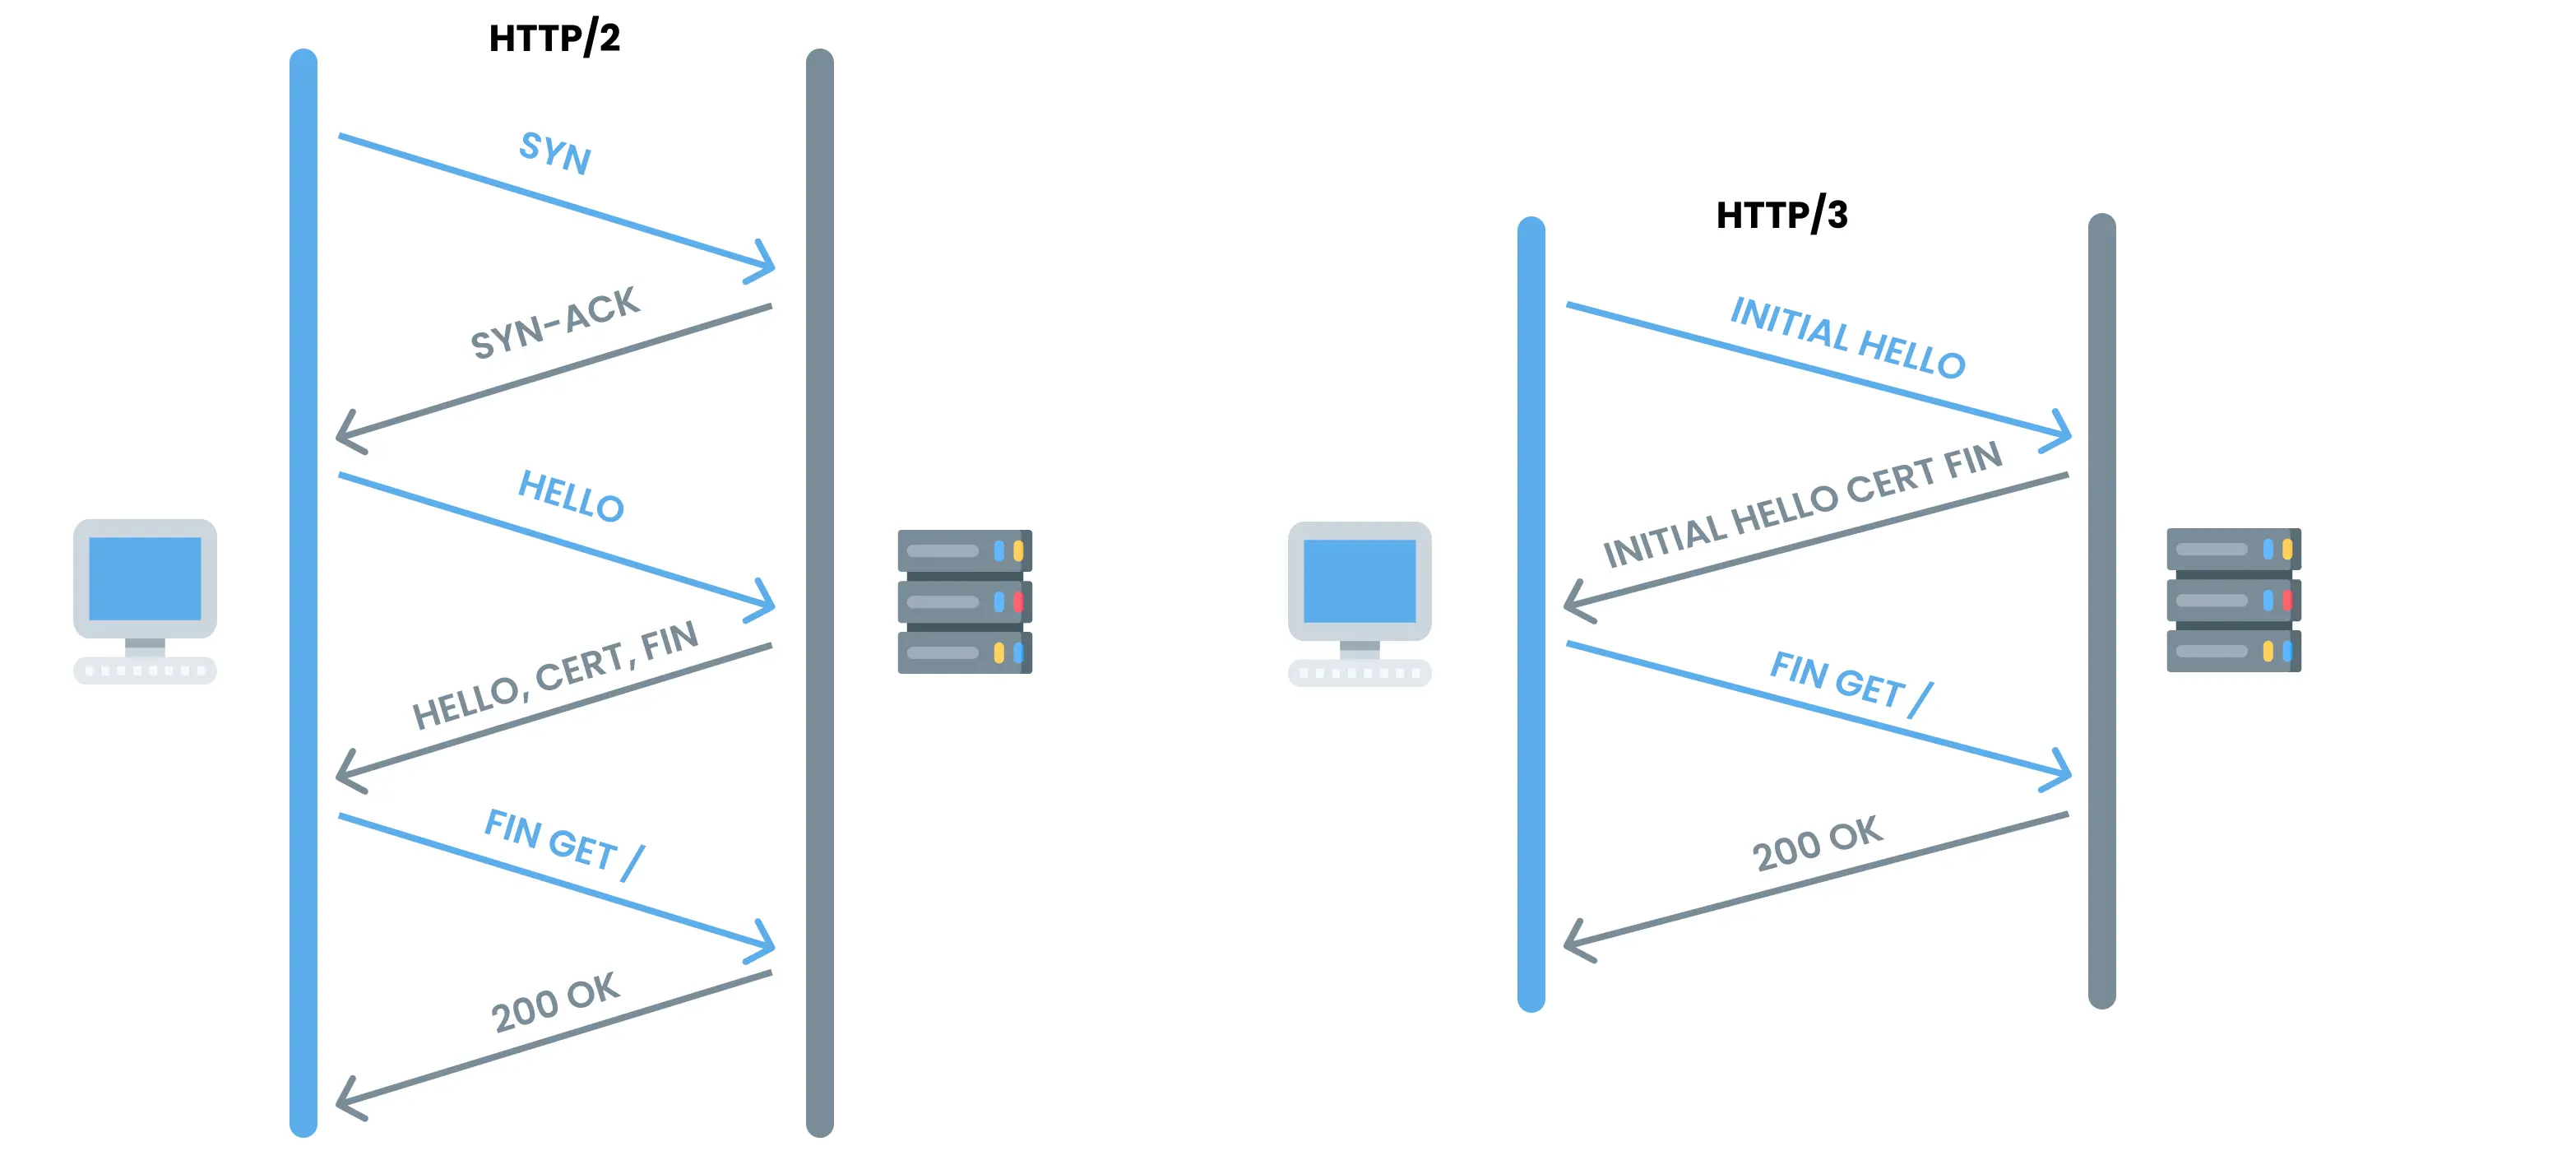 Comparaison handshake HTTP vs HTTP/3